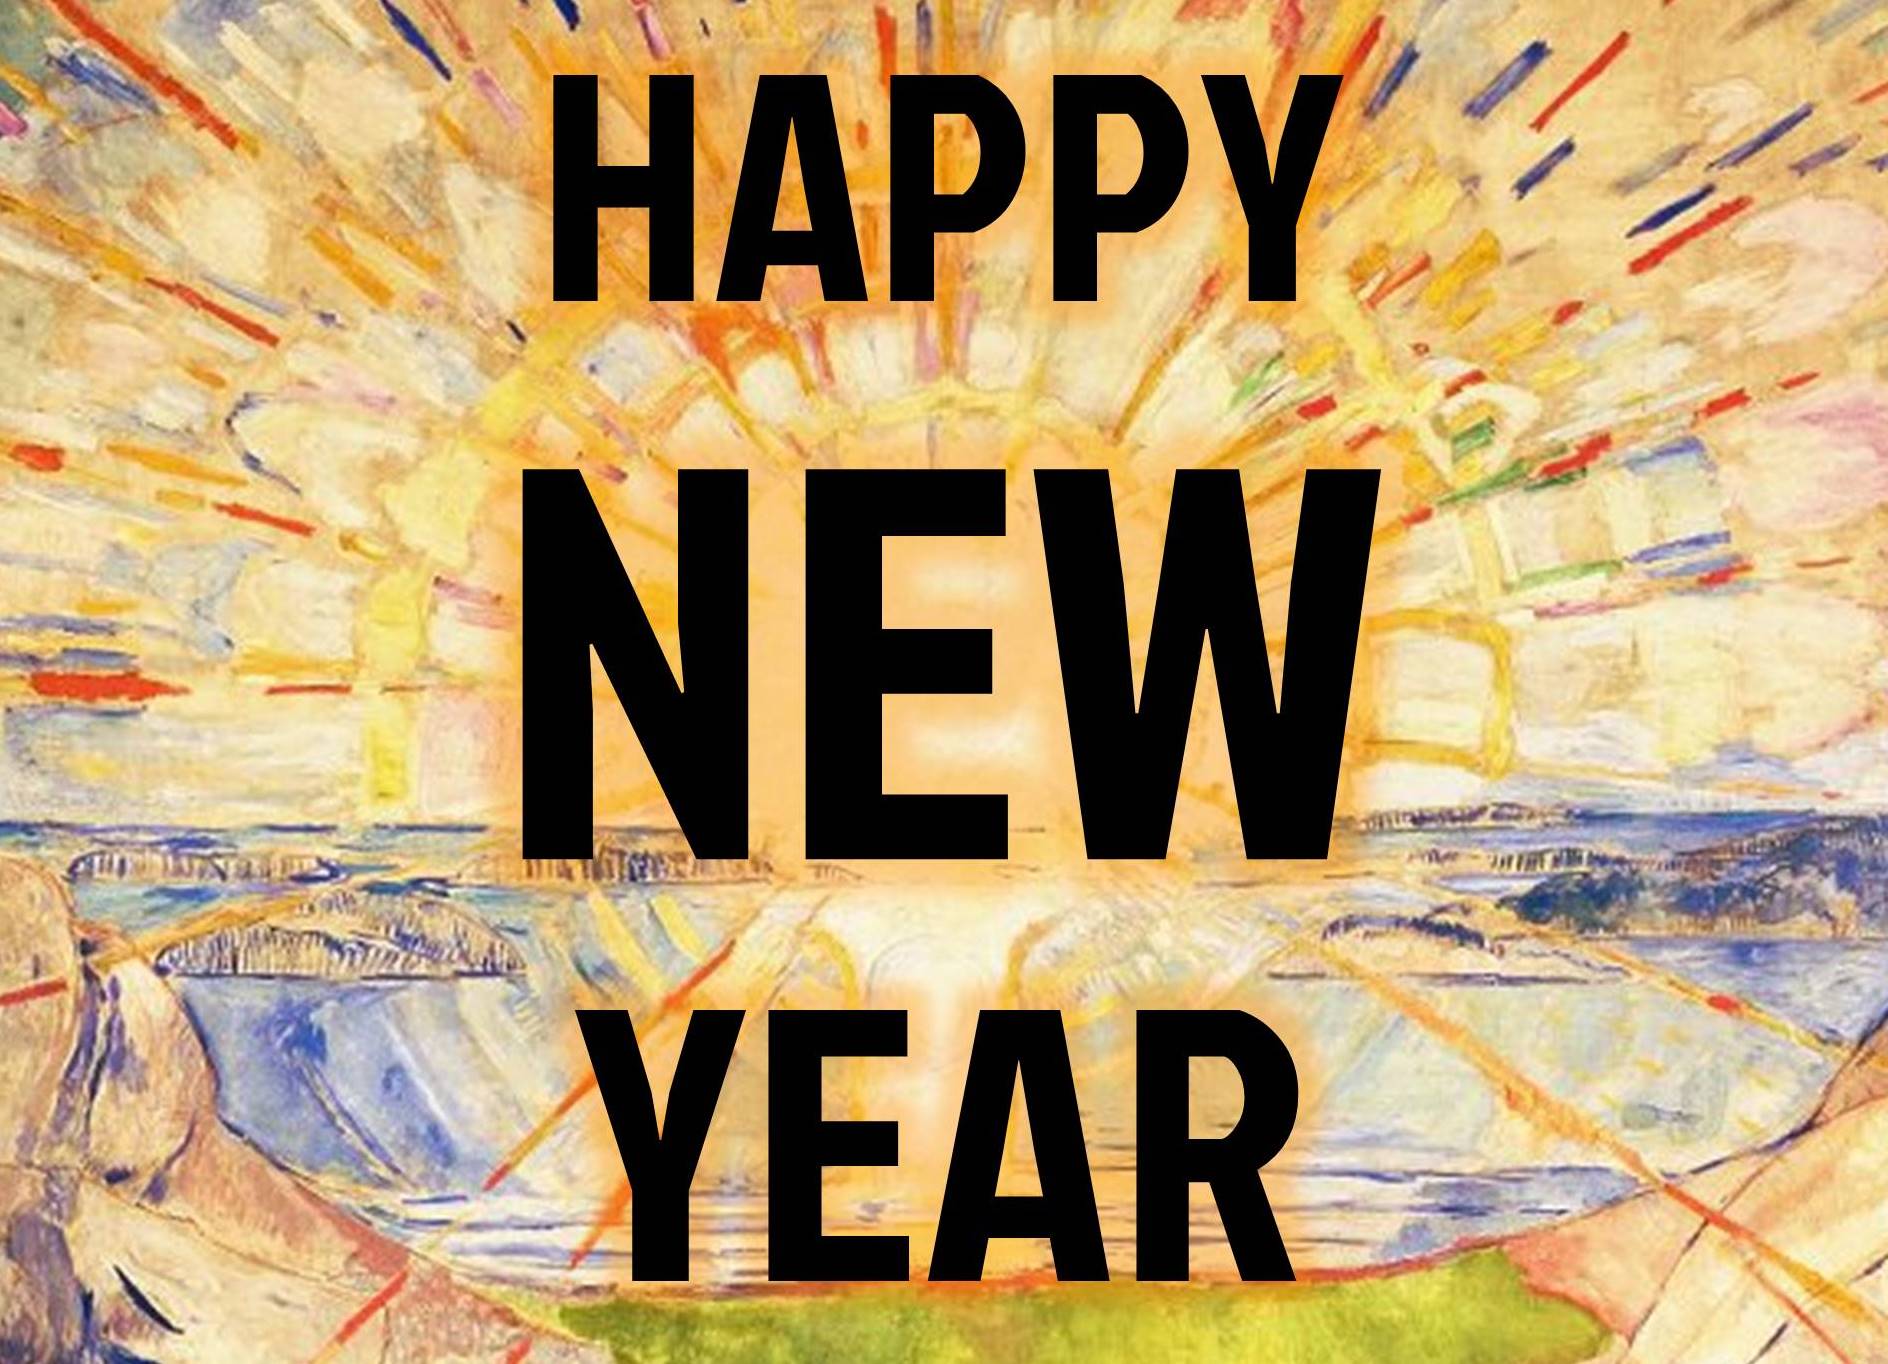 Schilderij van fel stralende opkomende zon met daarover de tekst 'HAPPY NEW YEAR'.